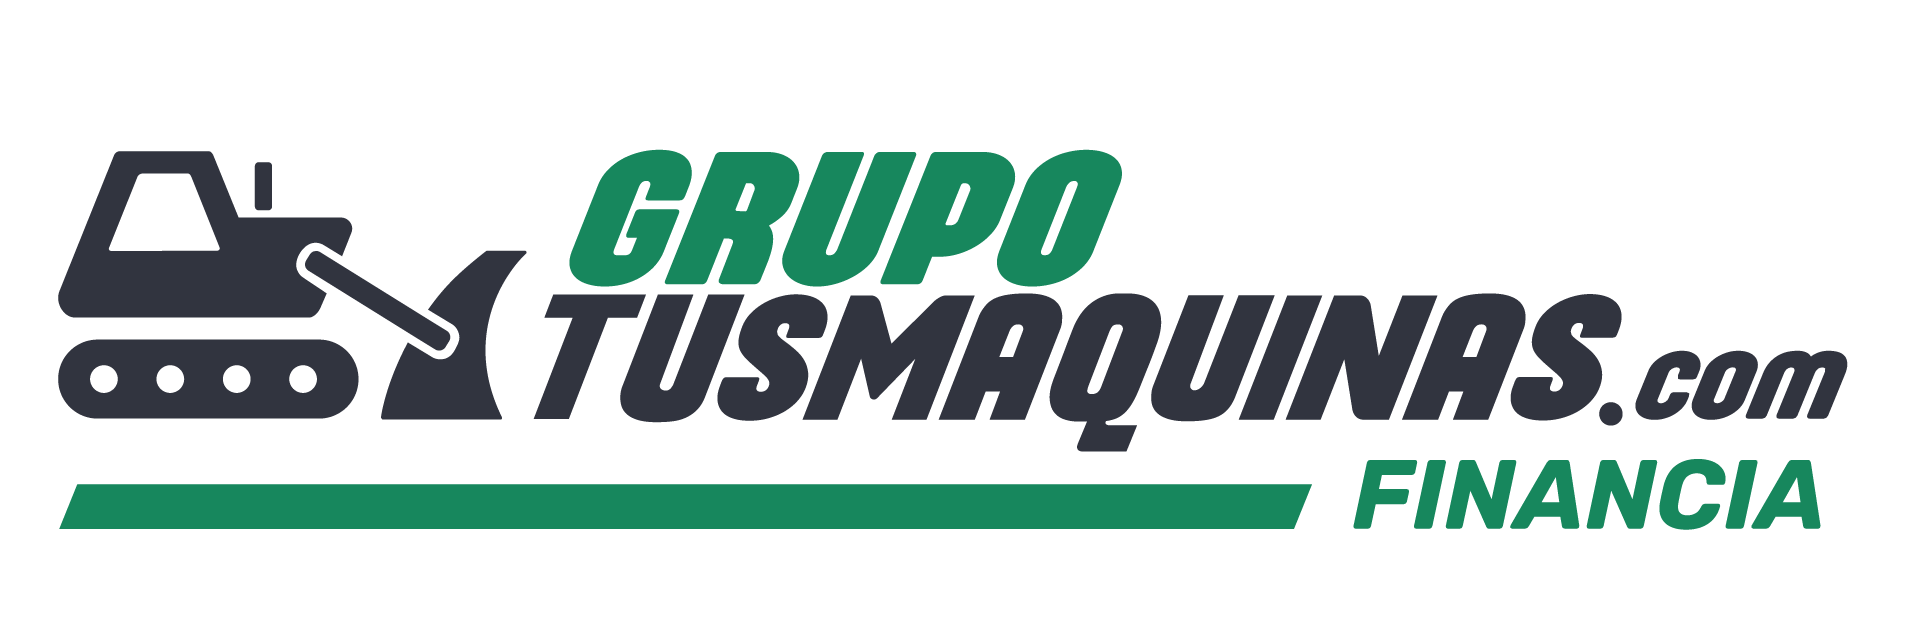 Logo ArriendaTuMaquina